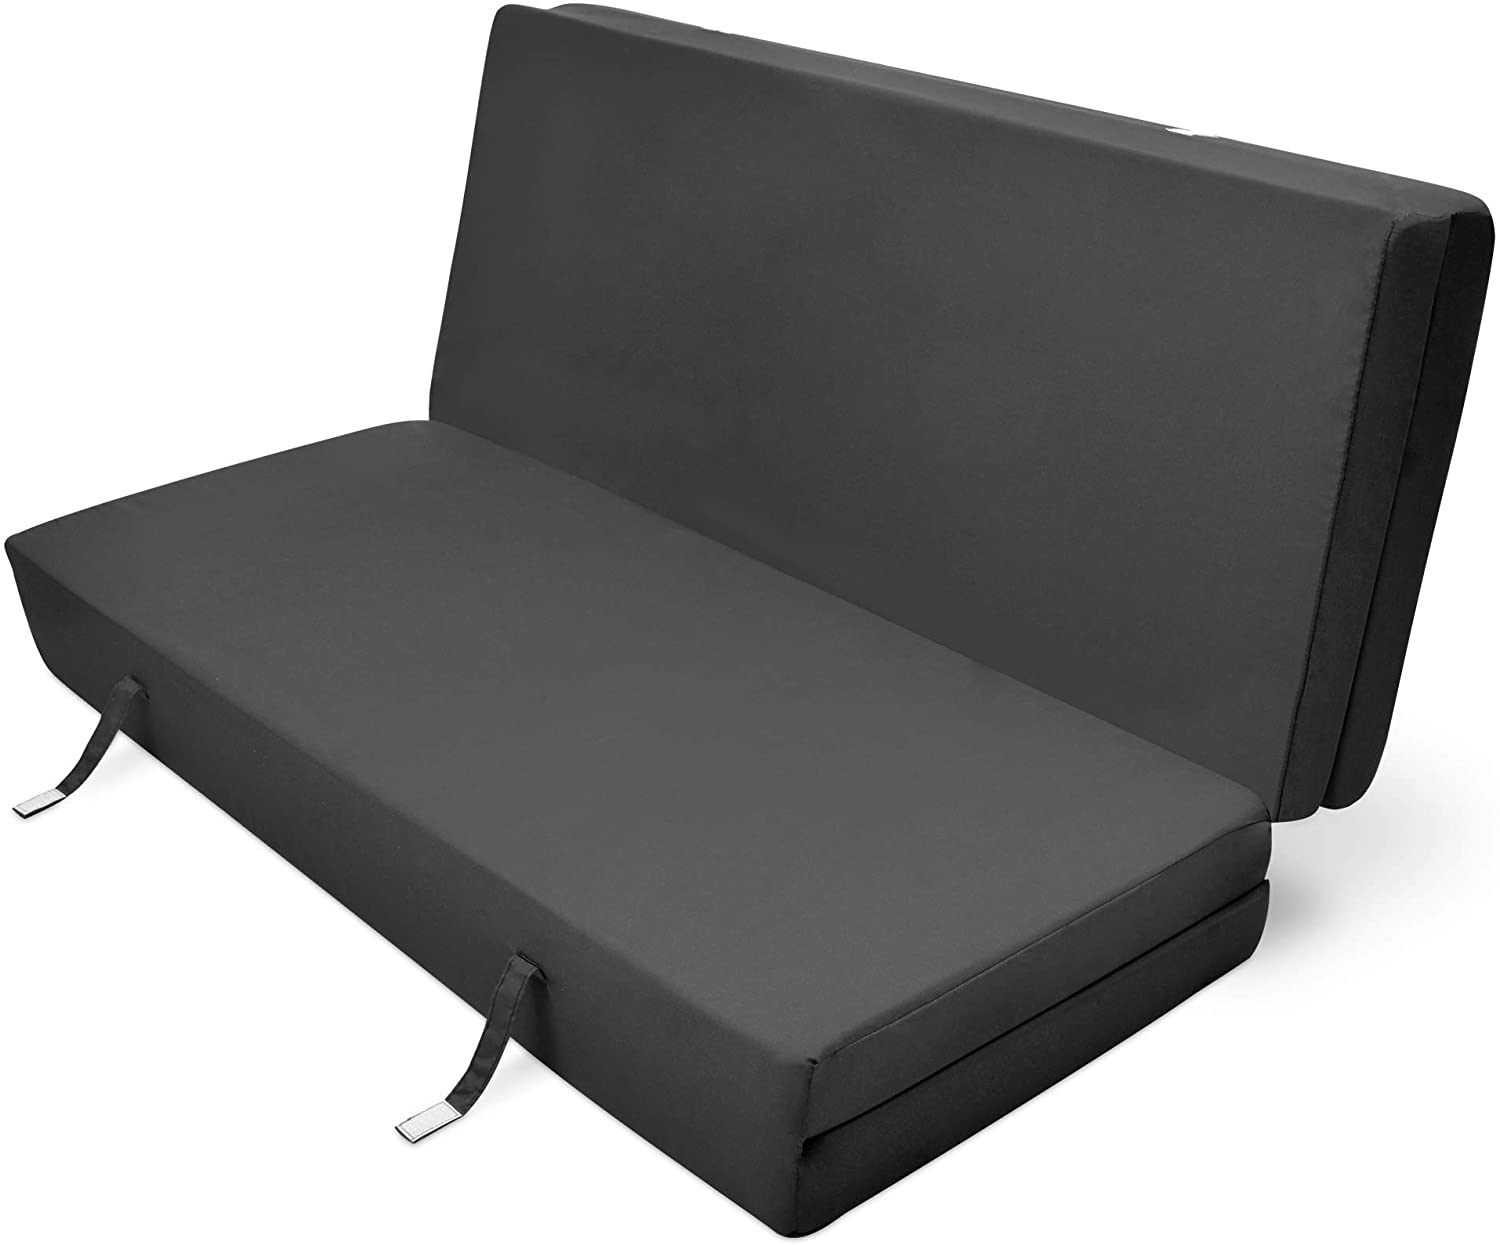  Beautissu Cómodo colchón Plegable Campix Auxiliar futón 120 x 195 x 7 cm Ahorra Espacio Tela Microfibra Antracita 